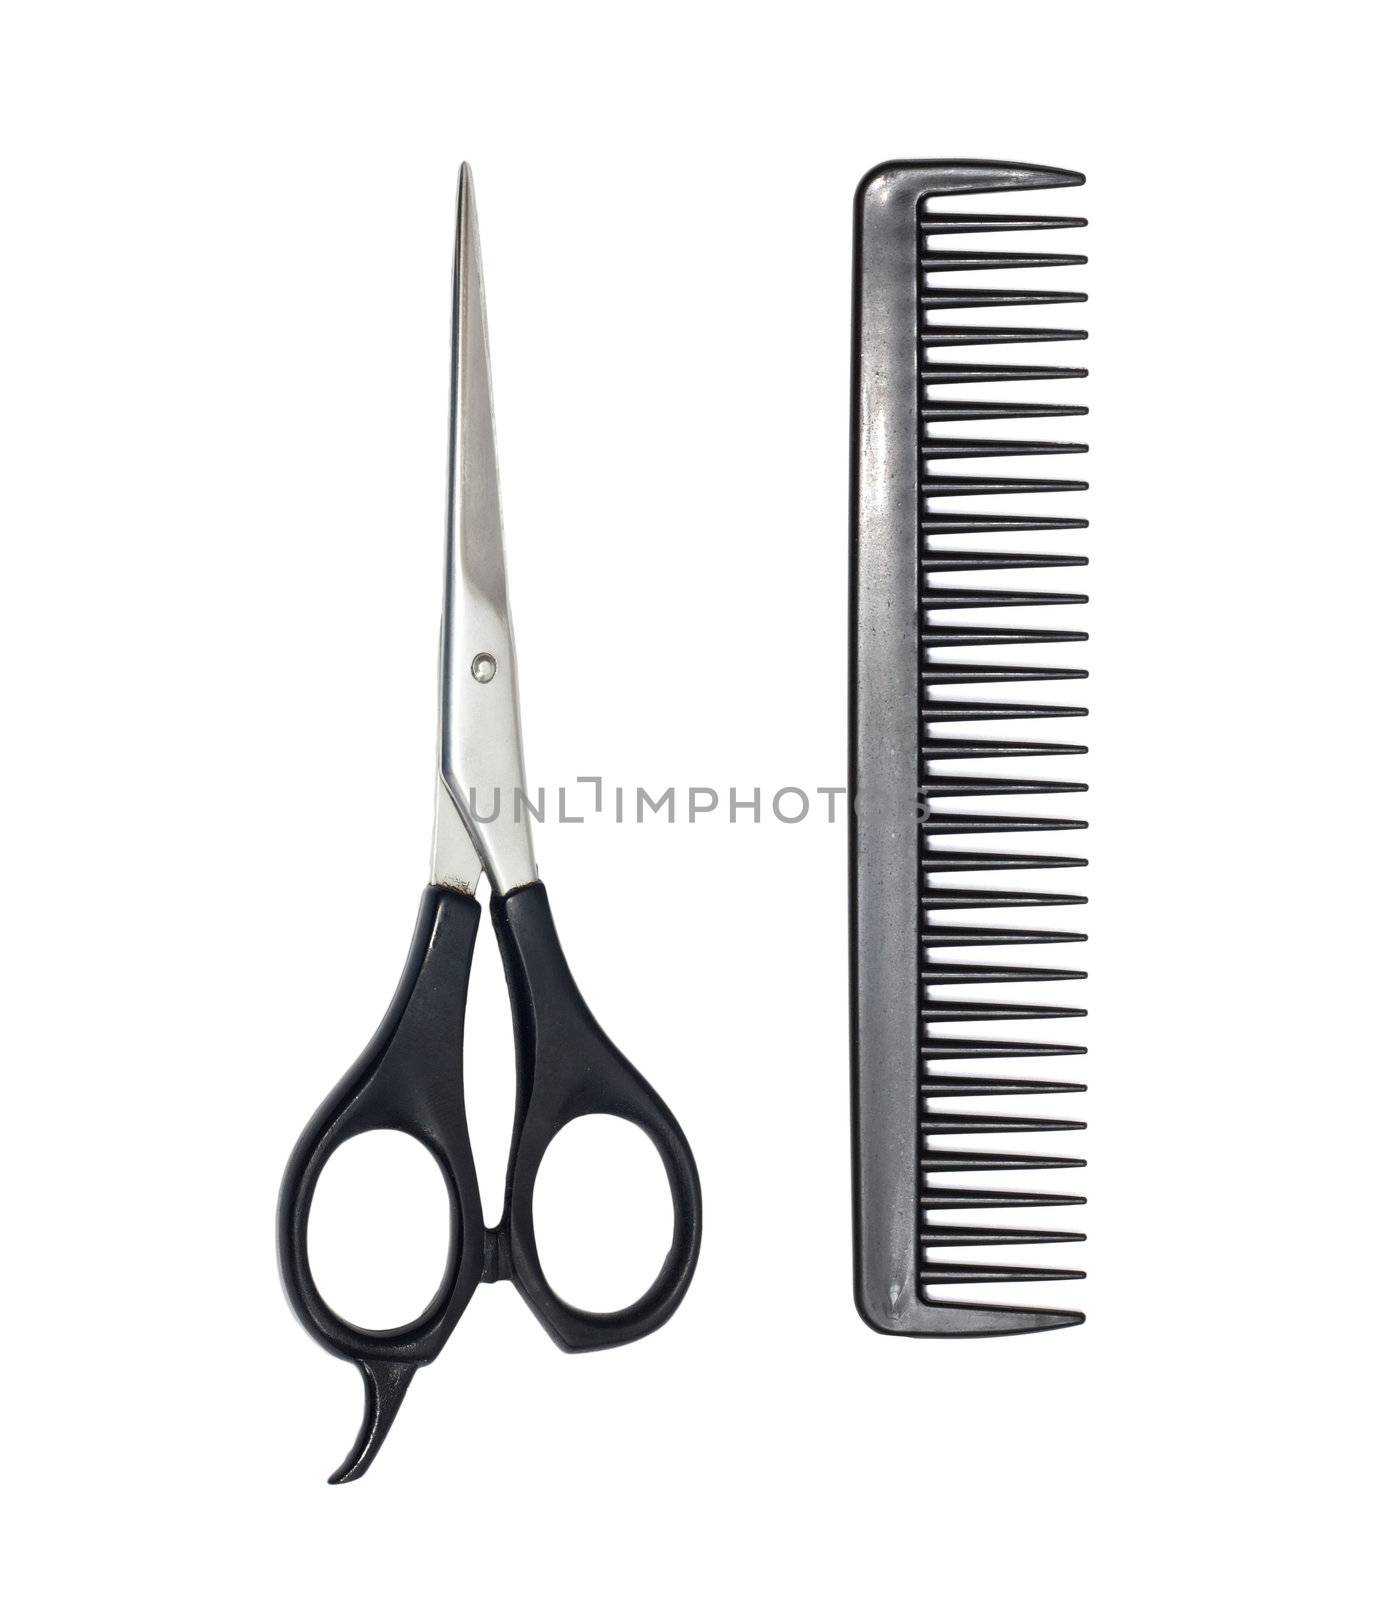 scissors and comb  by schankz